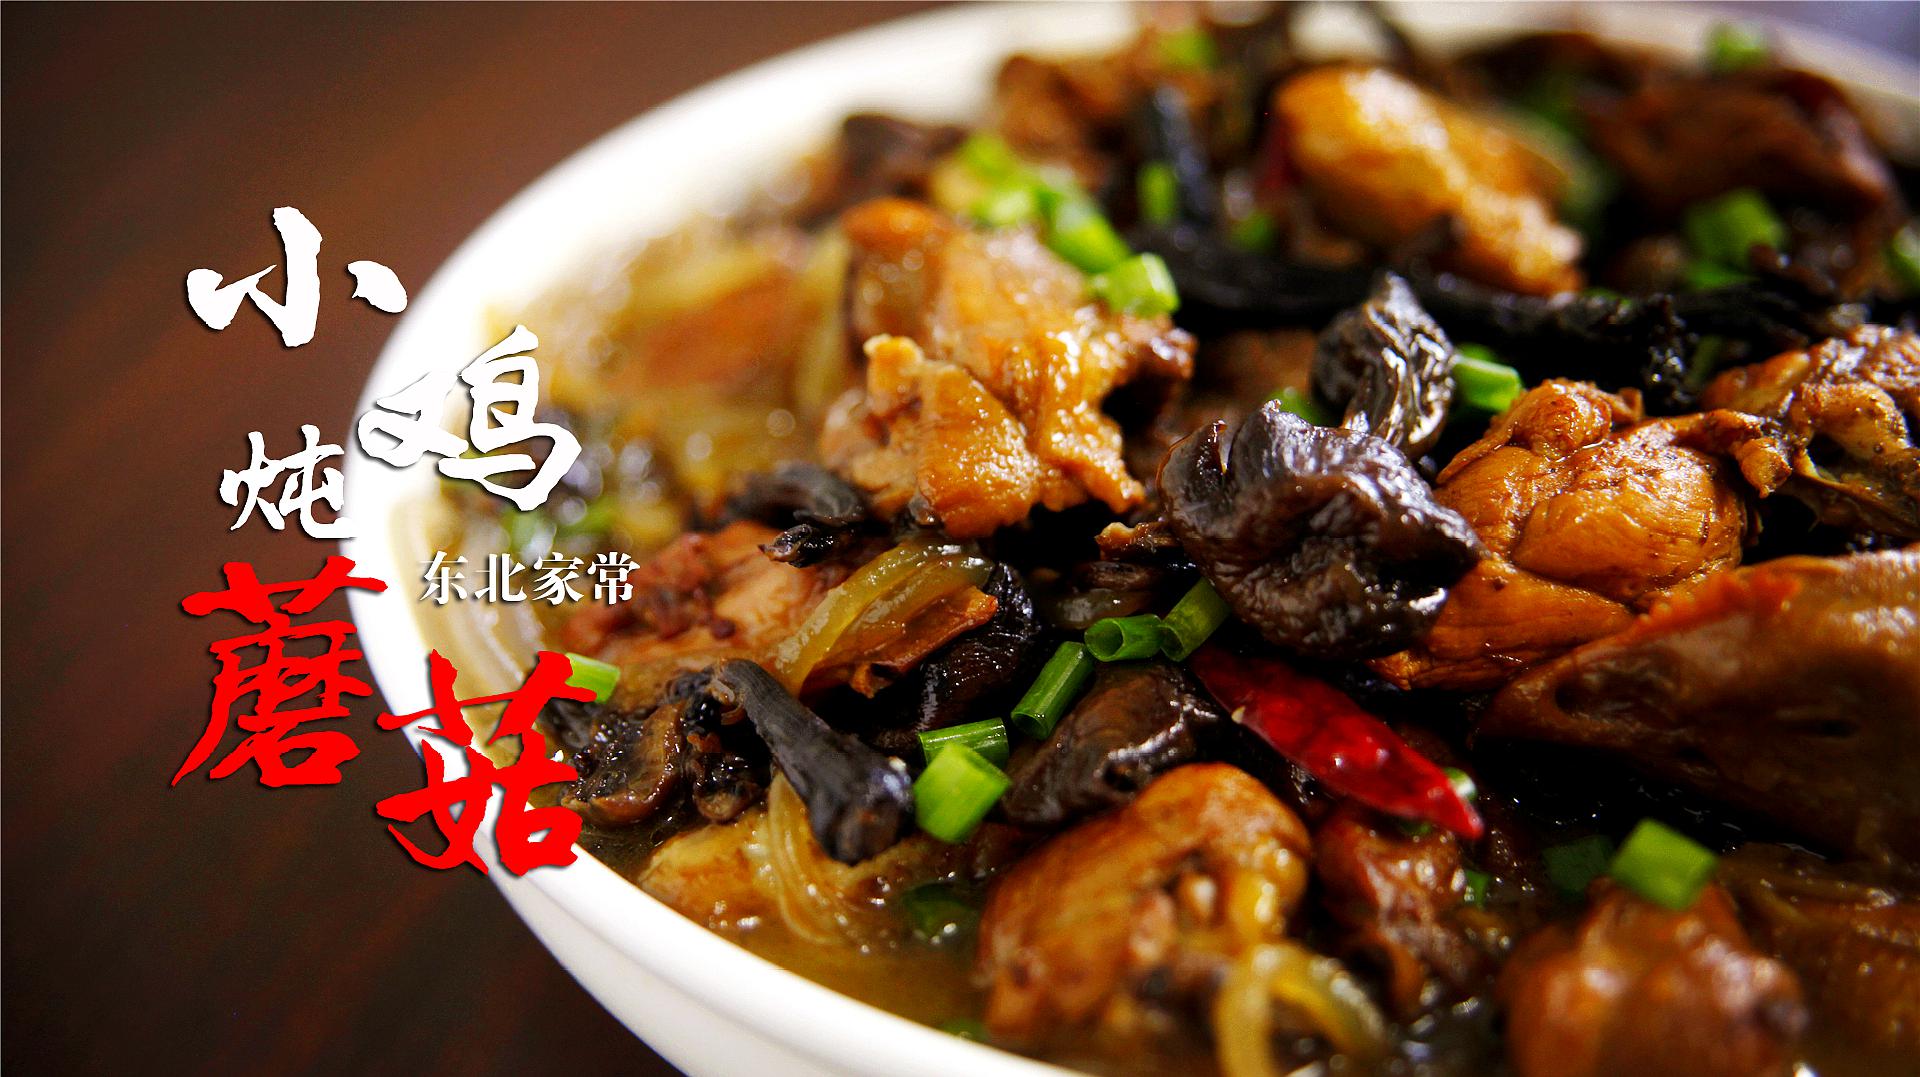 東北名菜小雞燉蘑菇的食材與步驟